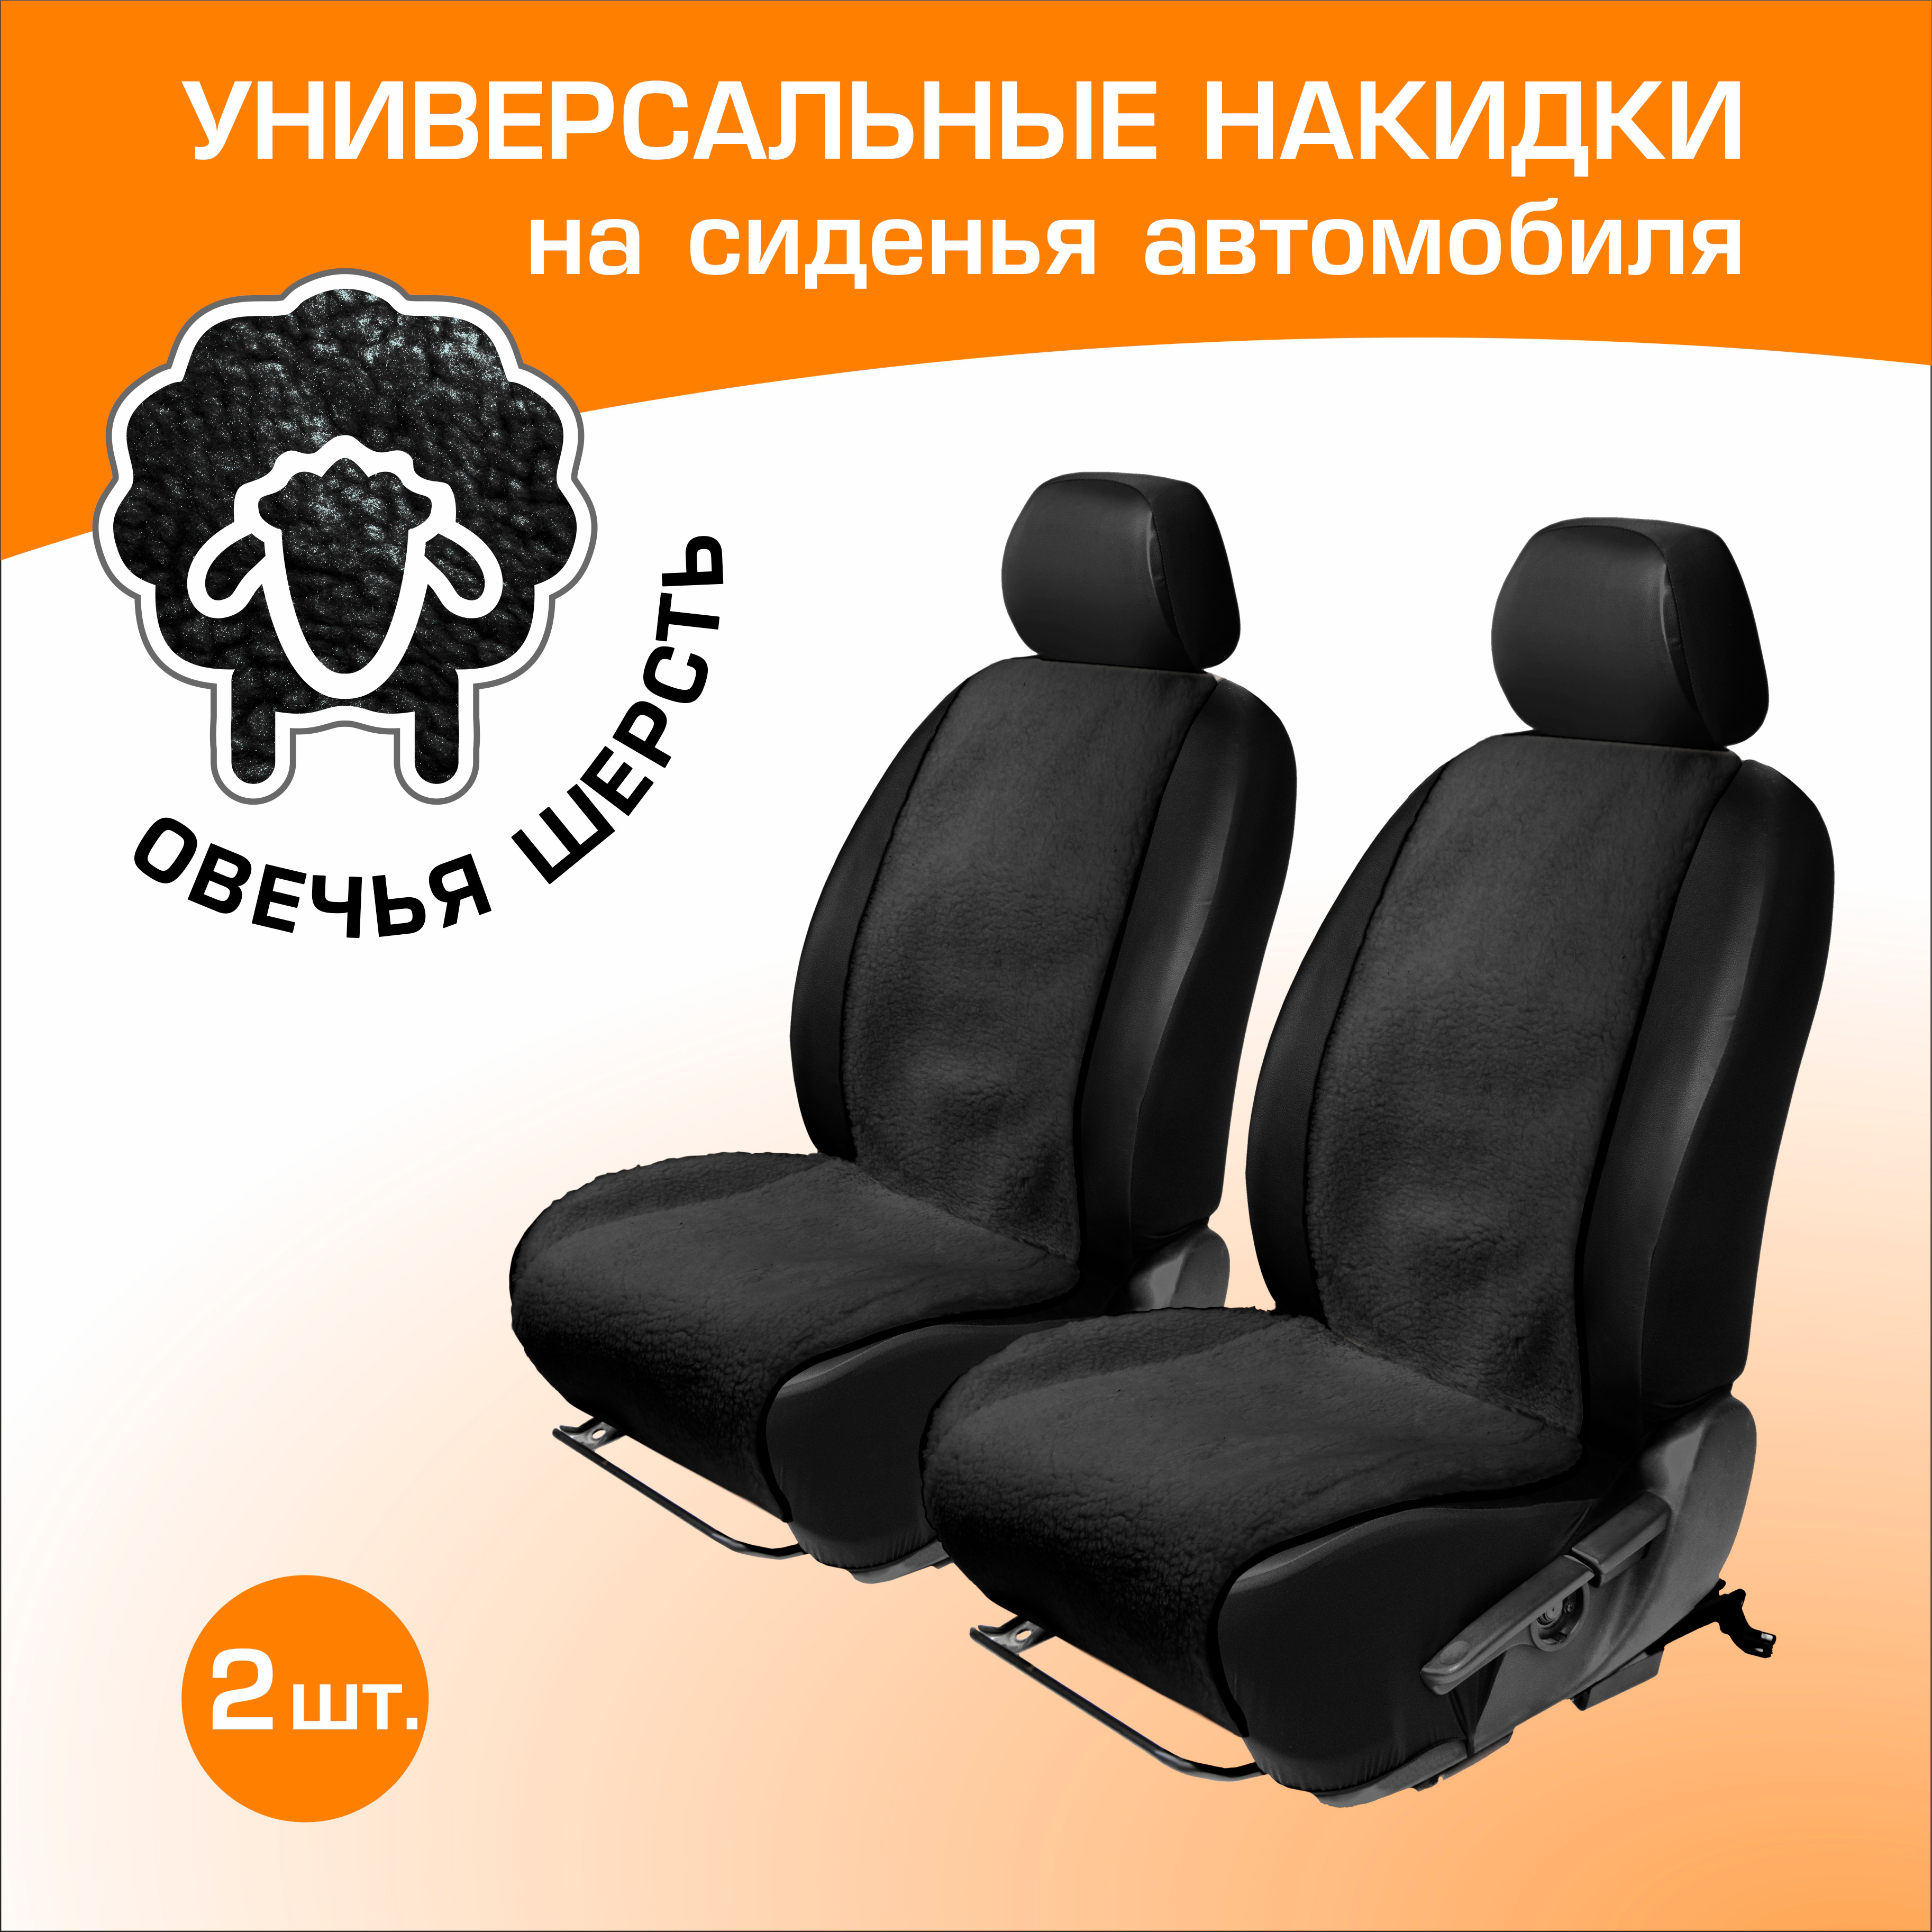 Меховые накидки на сиденья автомобиля (овчина) AutoFlex, универсальные, 2шт, черный, 91208